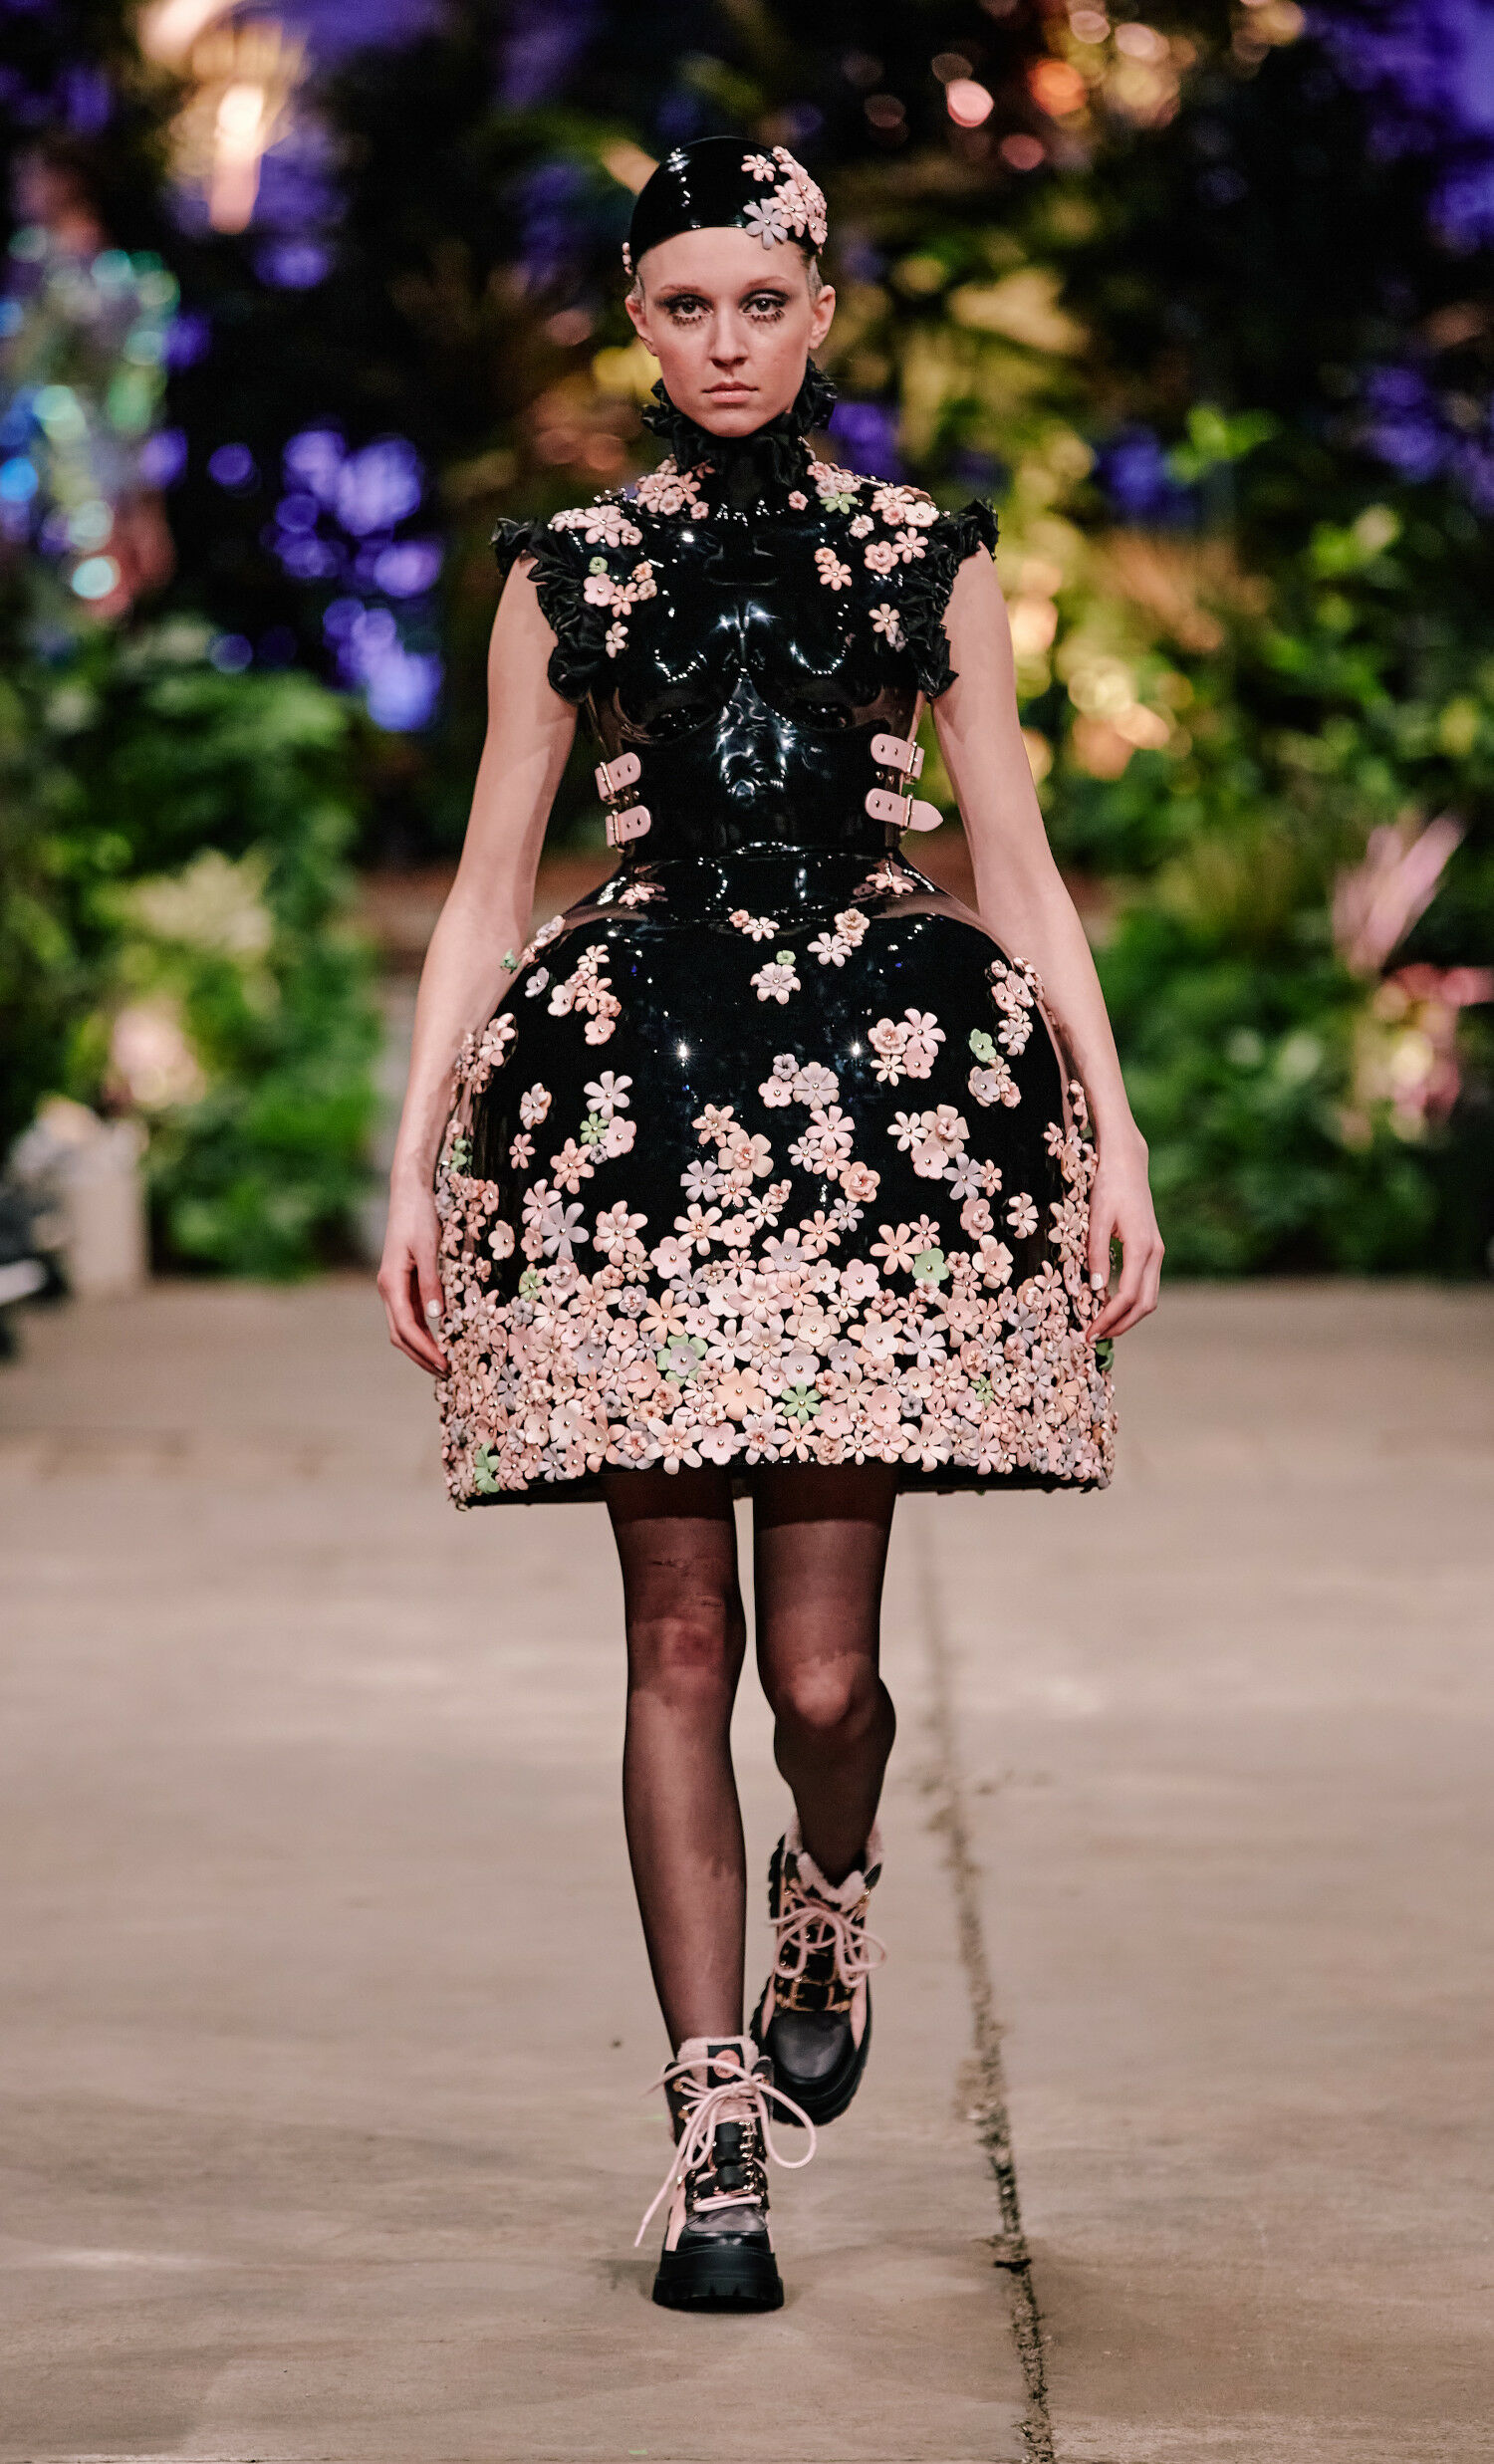 Ein Model in einem extravaganten Kleid mit Blumenmuster läuft auf einem Catwalk